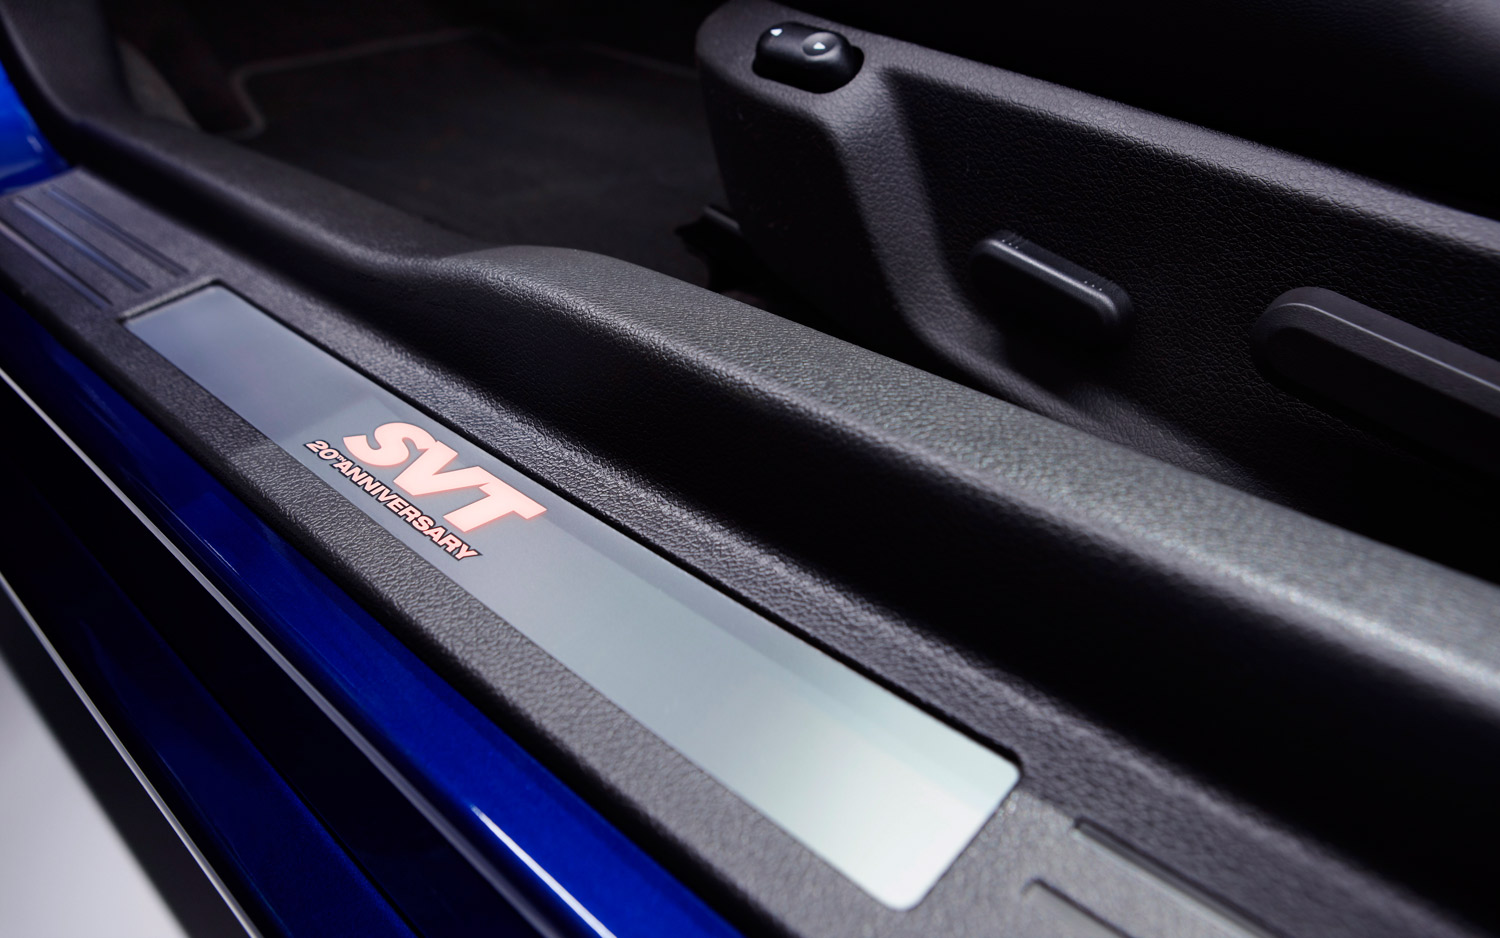 2013-Ford-shelby-GT500-Convertible-SVT-door-sill-closeup.jpg